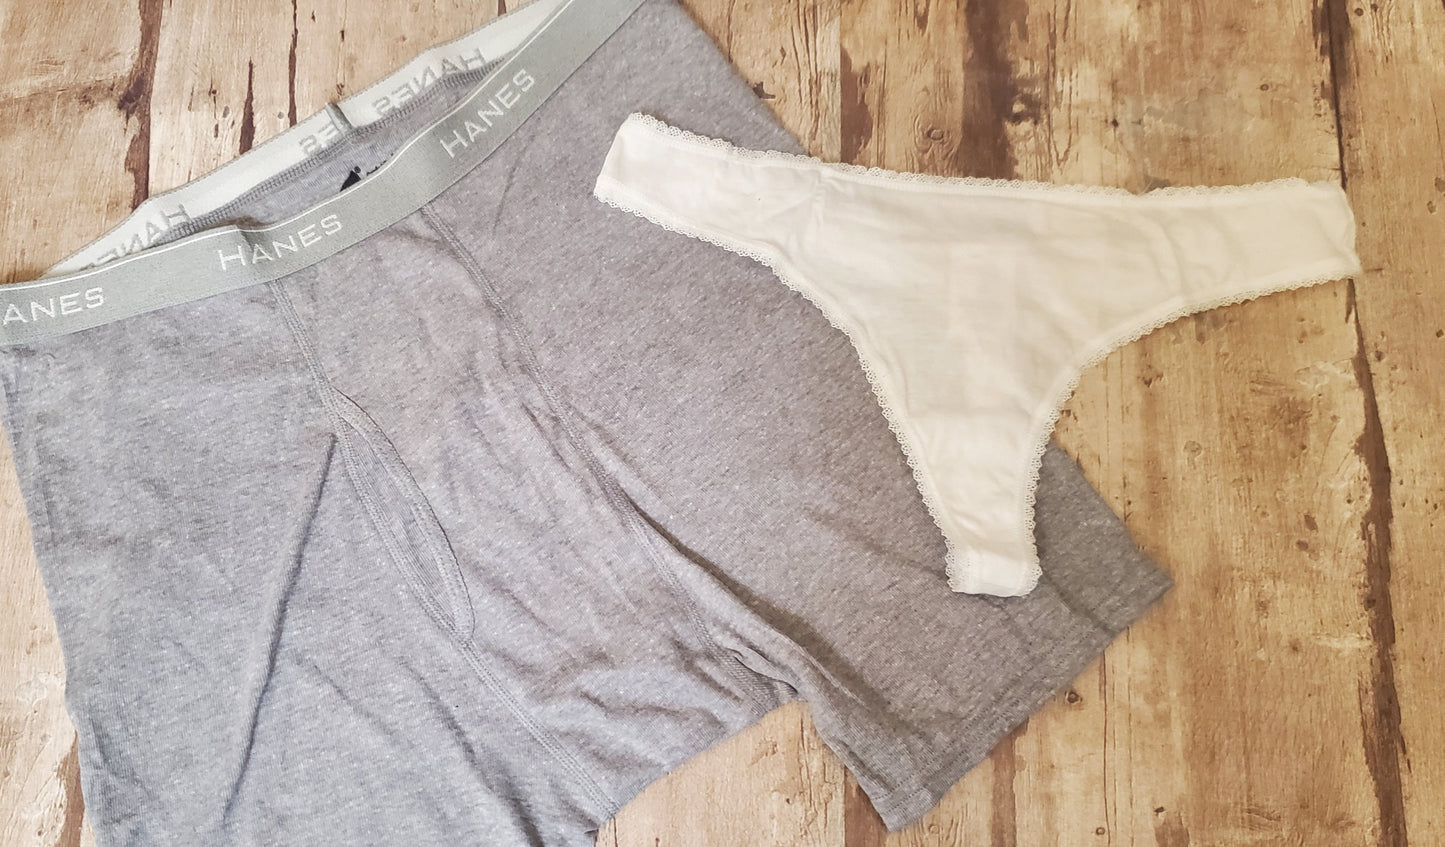 Men's briefs underwear " To Do "